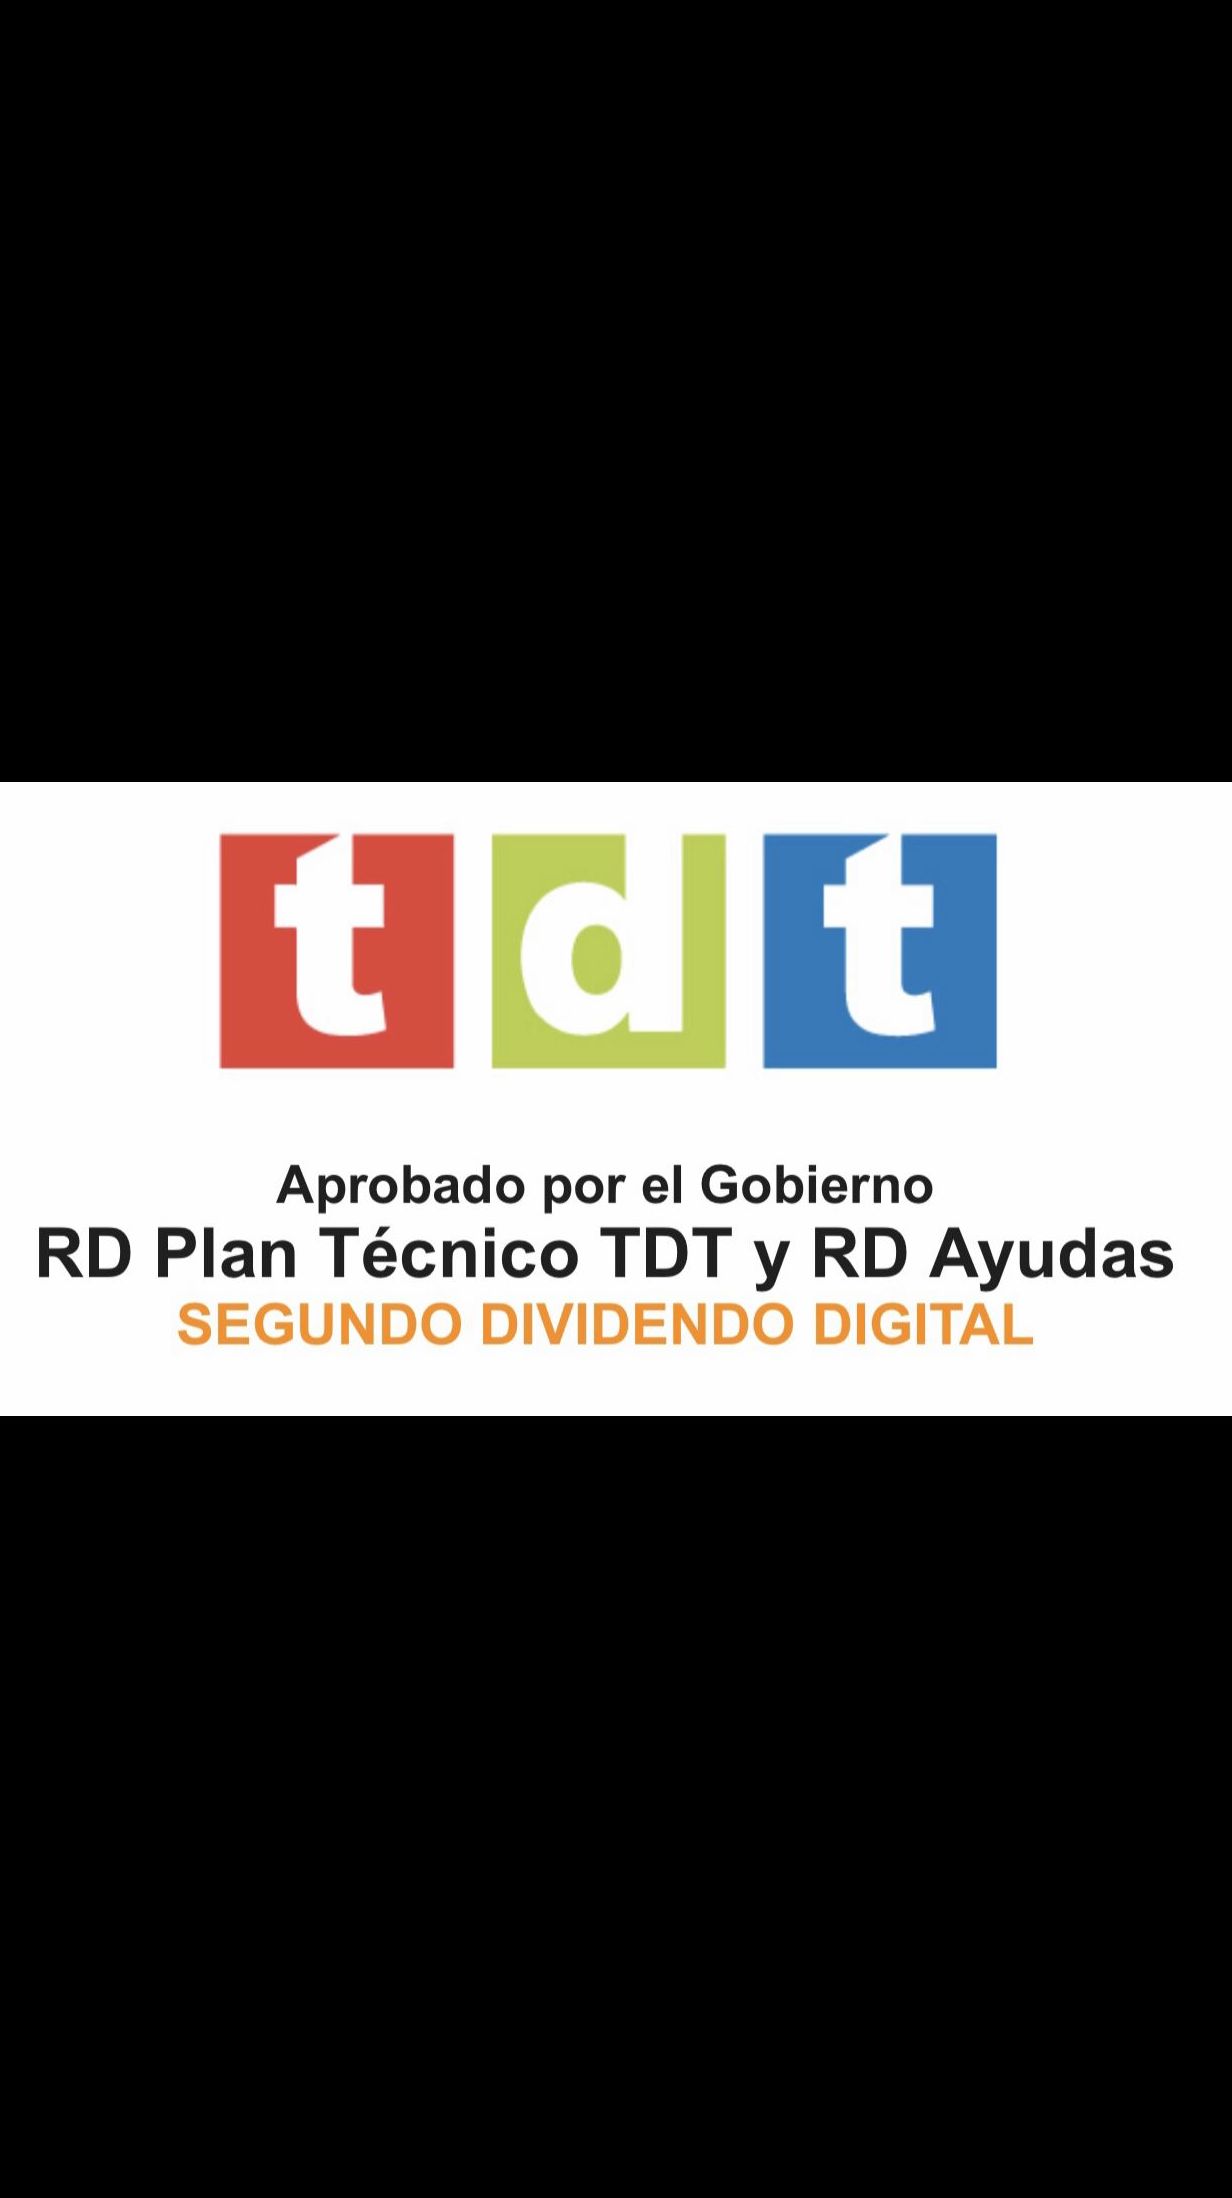 Comienza la cuenta atrás y con Ruimorma, instalación de antenas en El Barrio del Pilar, te hacemos la adaptación a la TDT2 }}